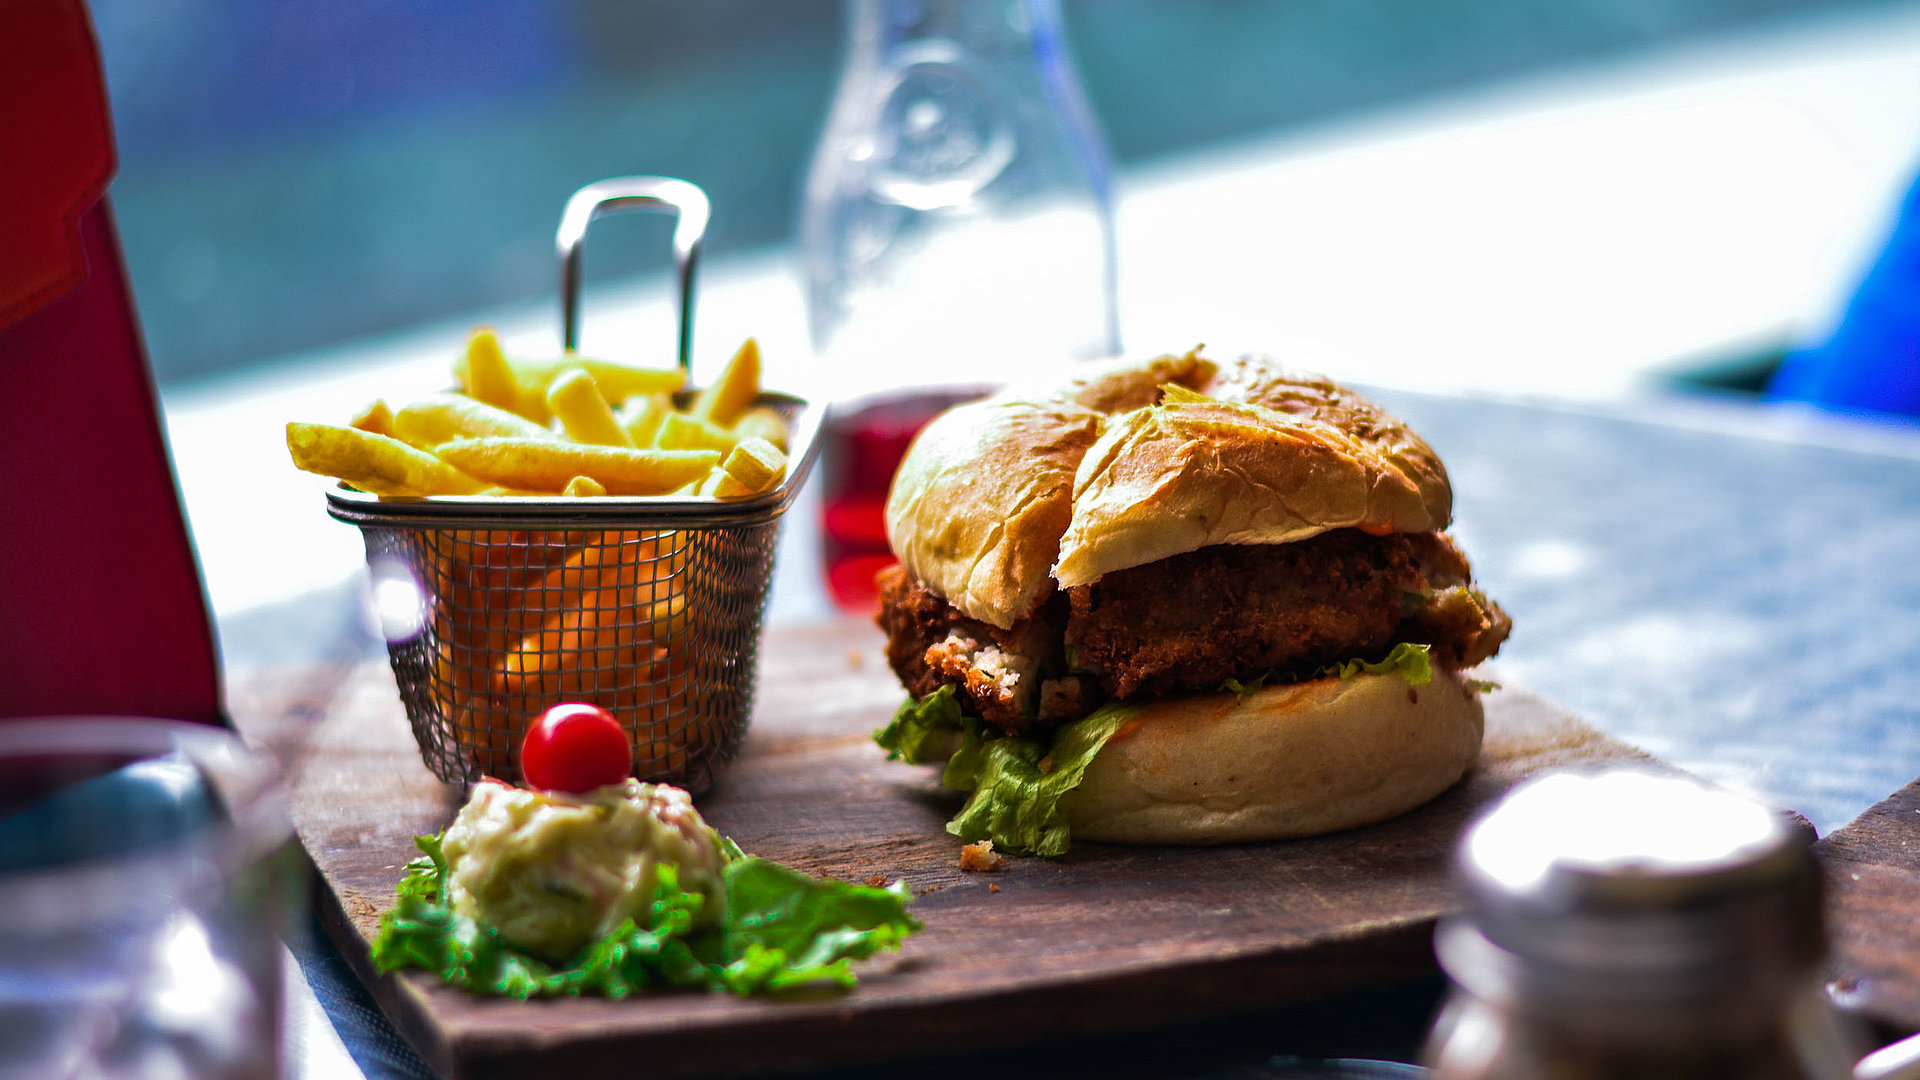 Gastronomie in Oberfranken - im Restaurant; Burger, Pommes und Salat auf einem Holzbrett